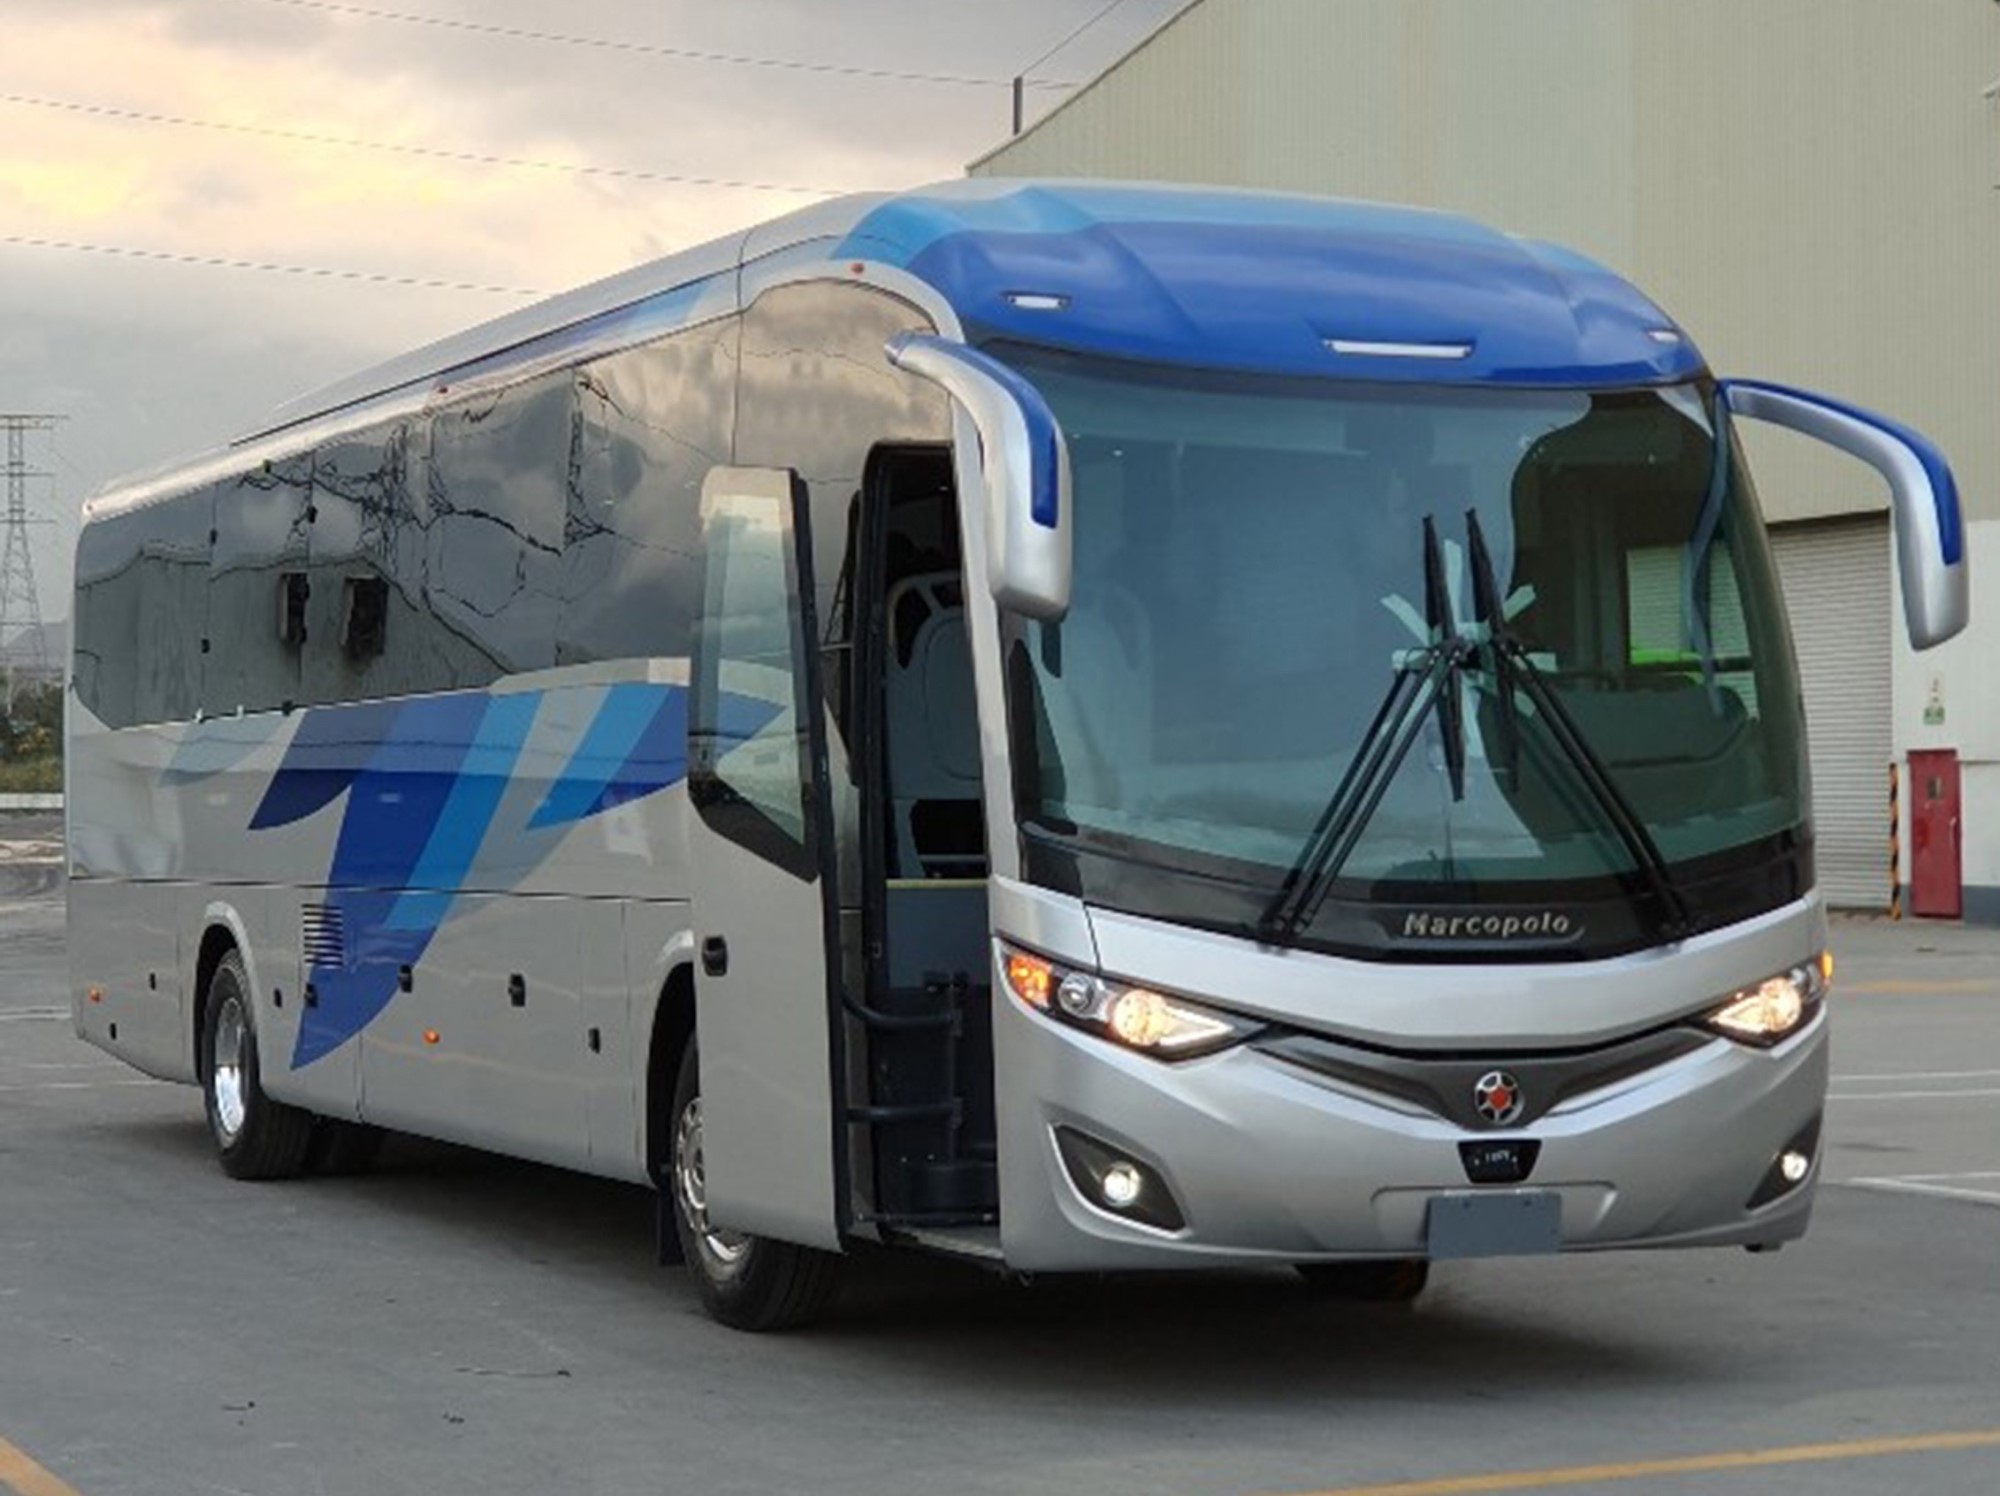 Marcopolo lança ônibus Viaggio 950 no México